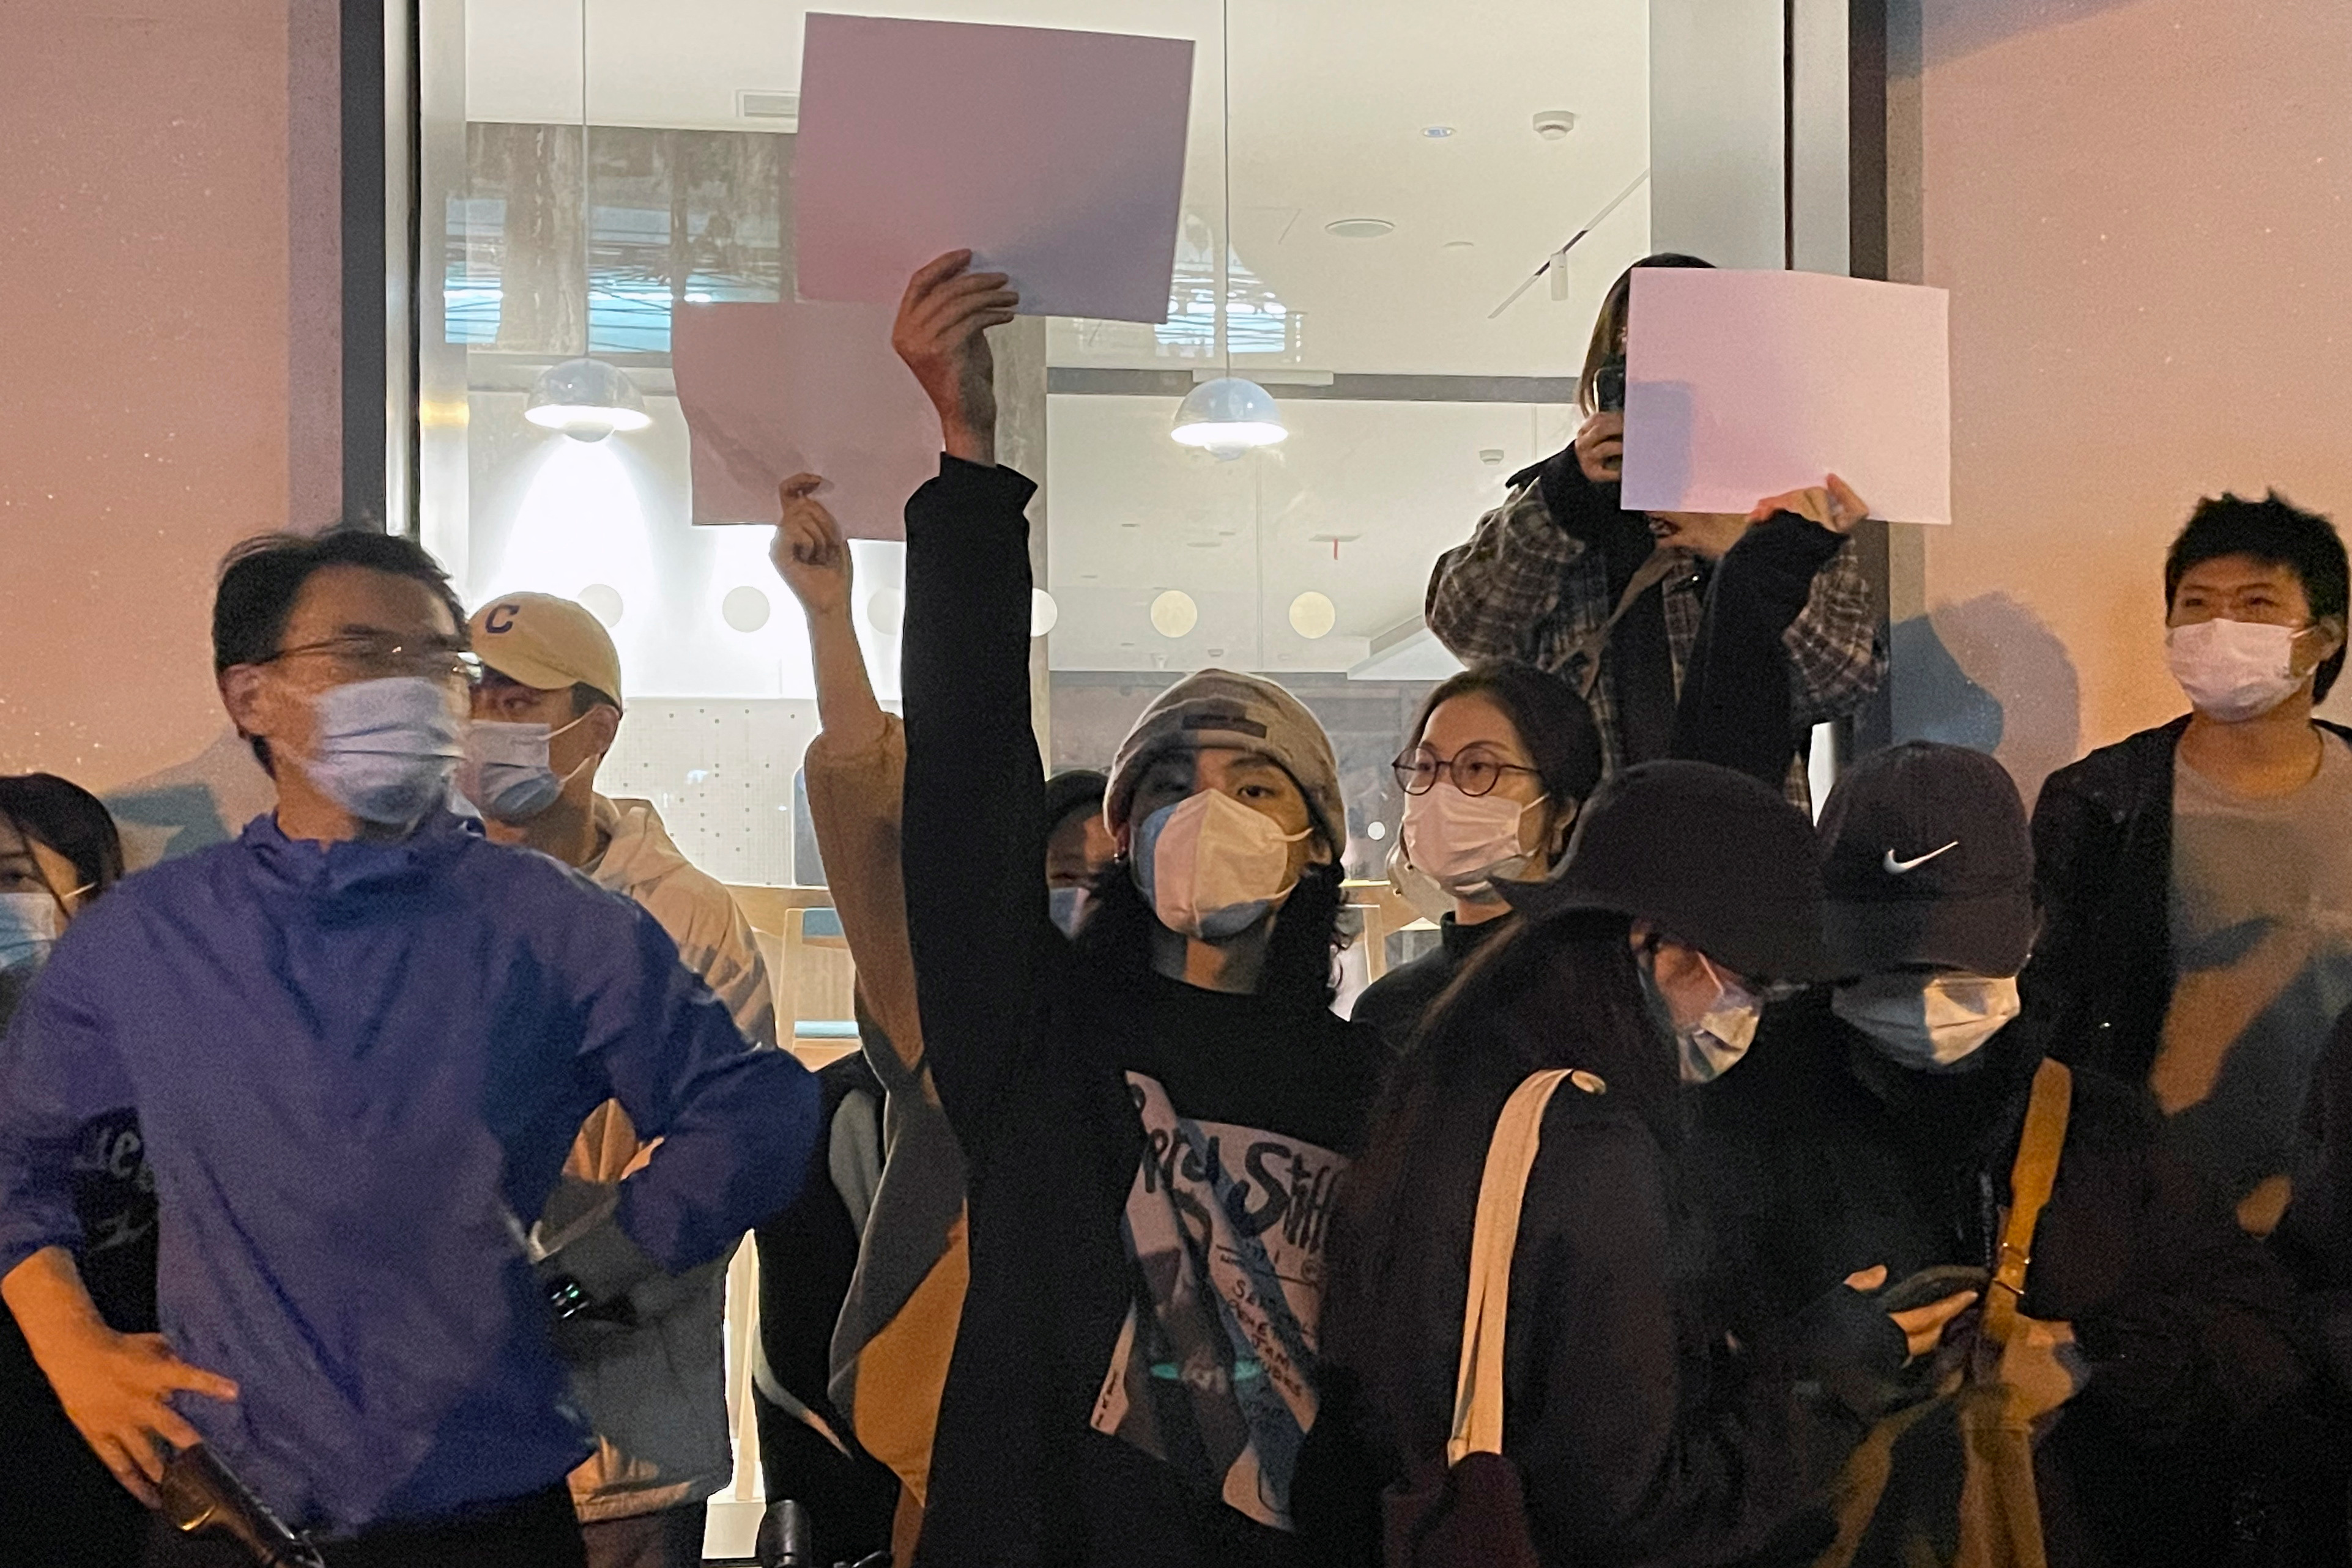 La gente sostiene hojas de papel en blanco durante una manifestación contra las restricciones de COVID-19 tras el mortal incendio de Urumqi, en Shanghái, China, el 27 de noviembre de 2022. (REUTERS/Josh Horwitz)